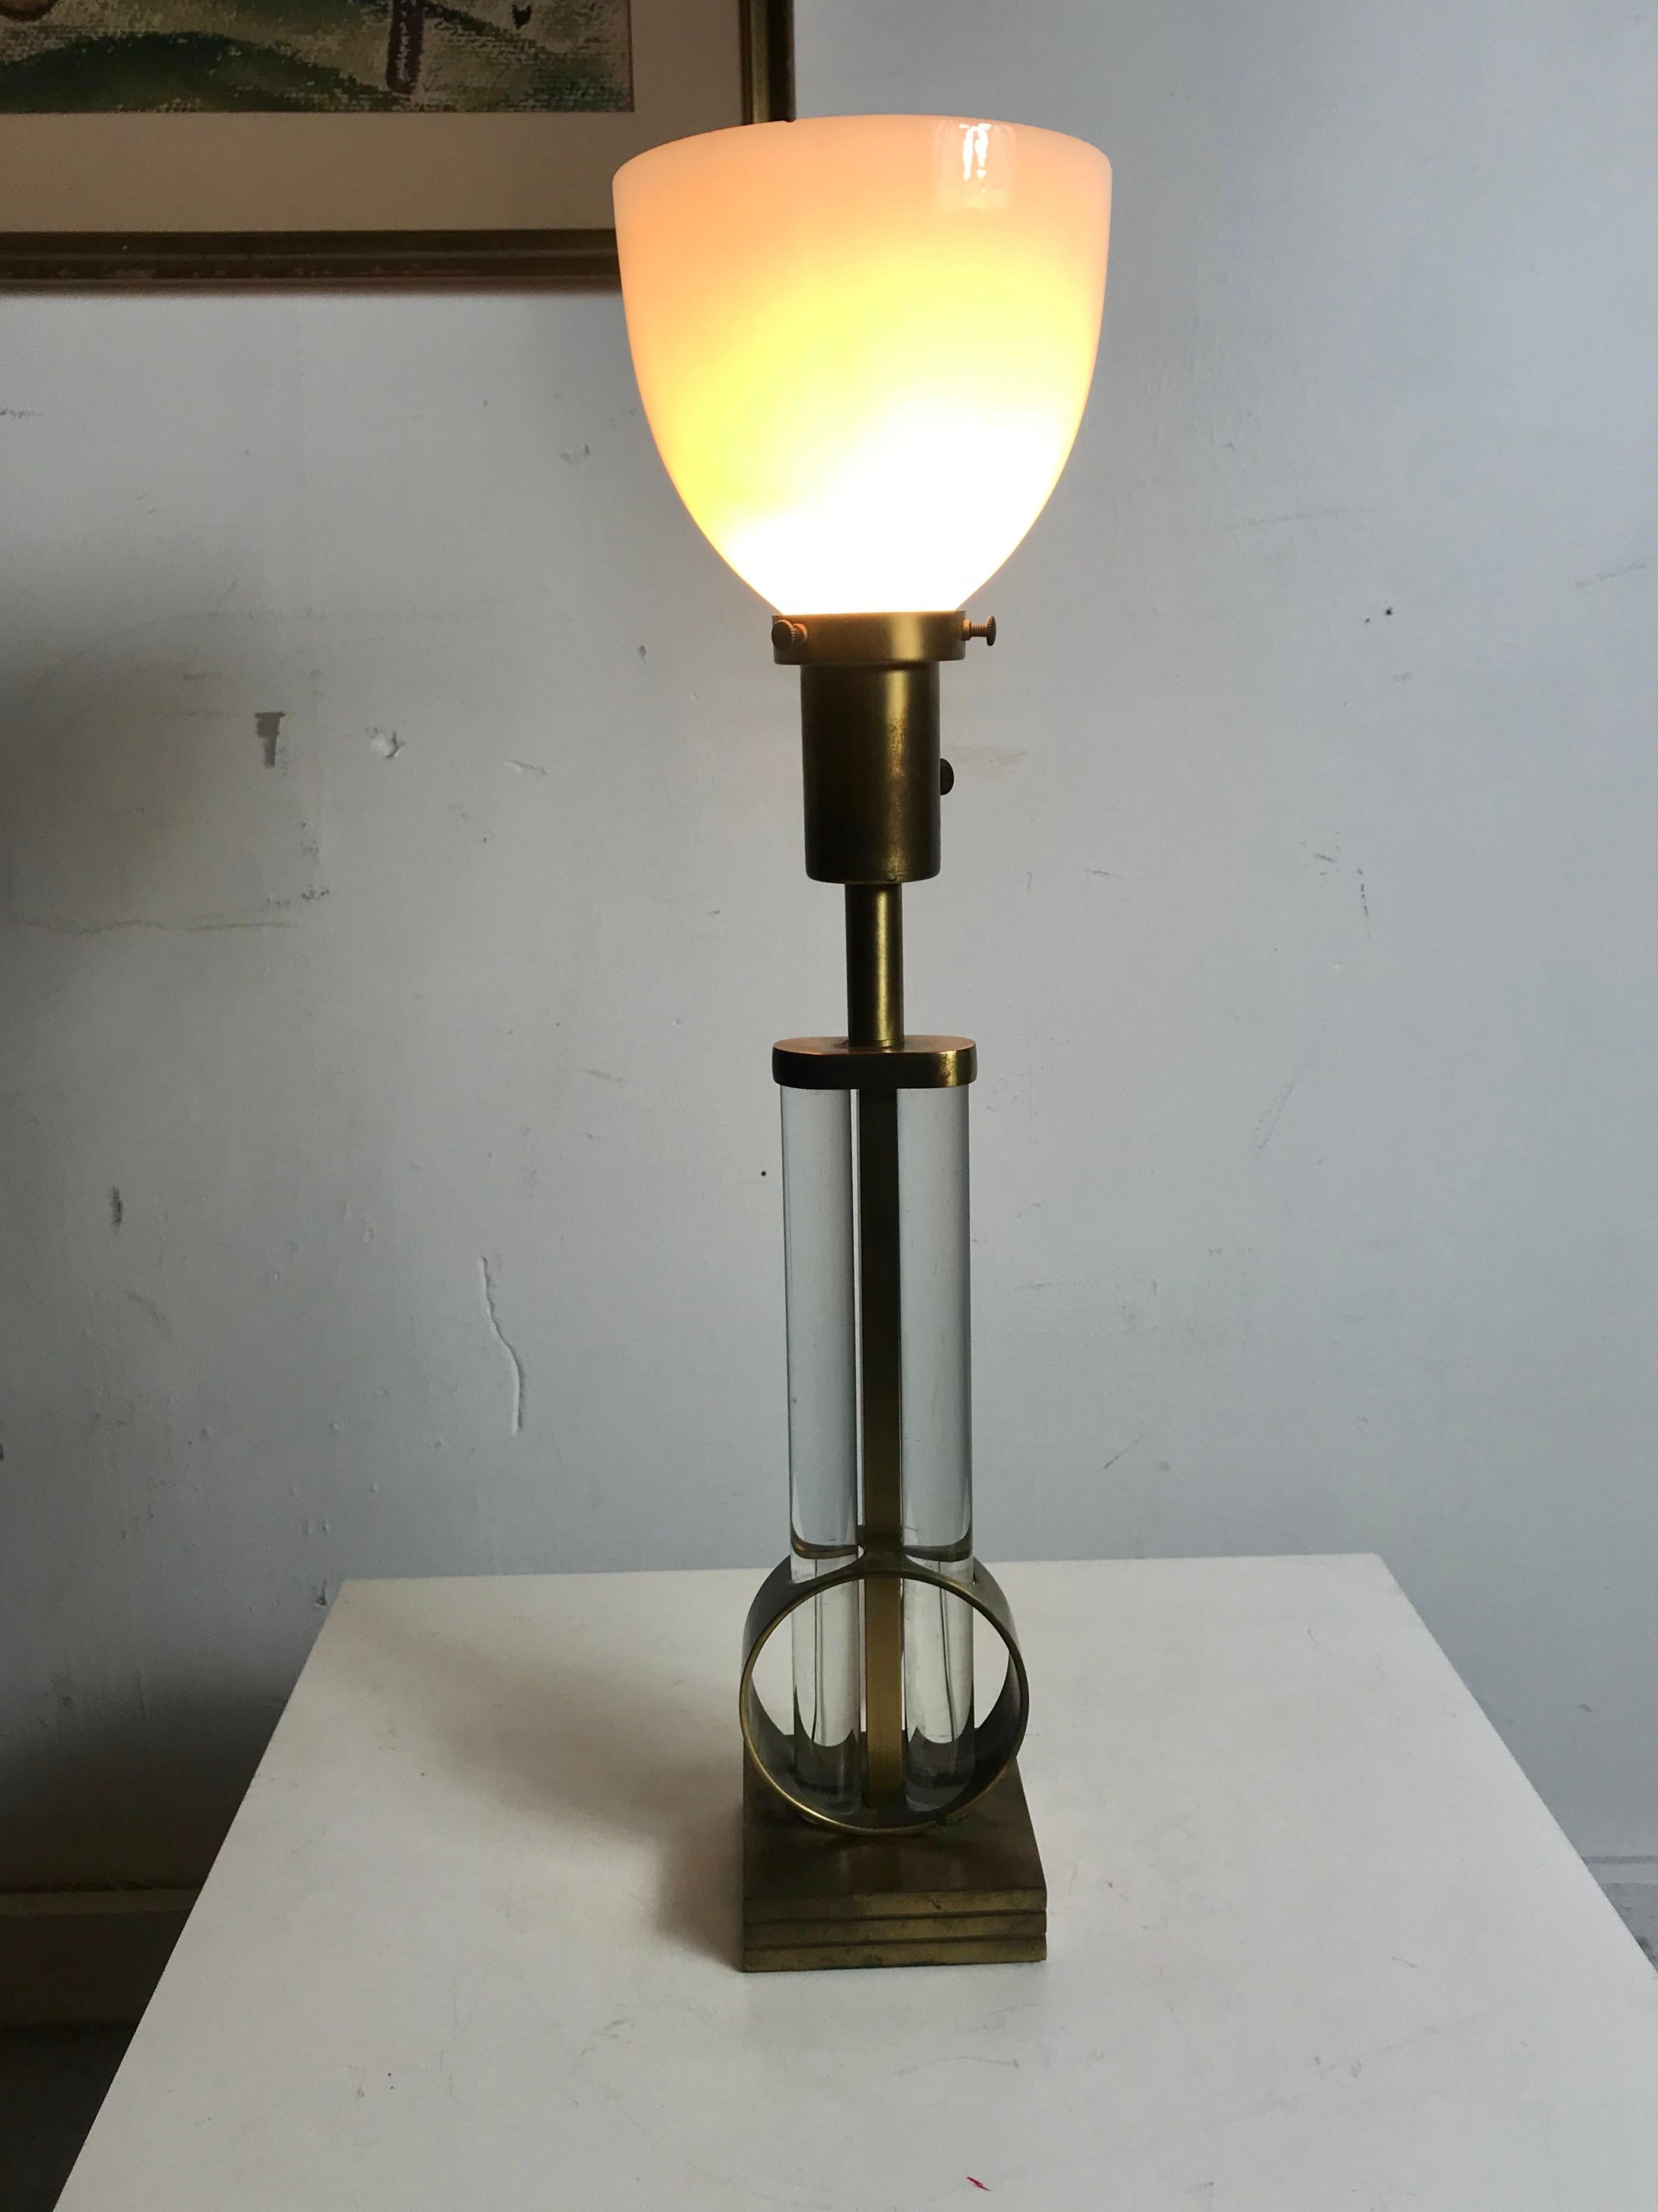 gilbert lamp